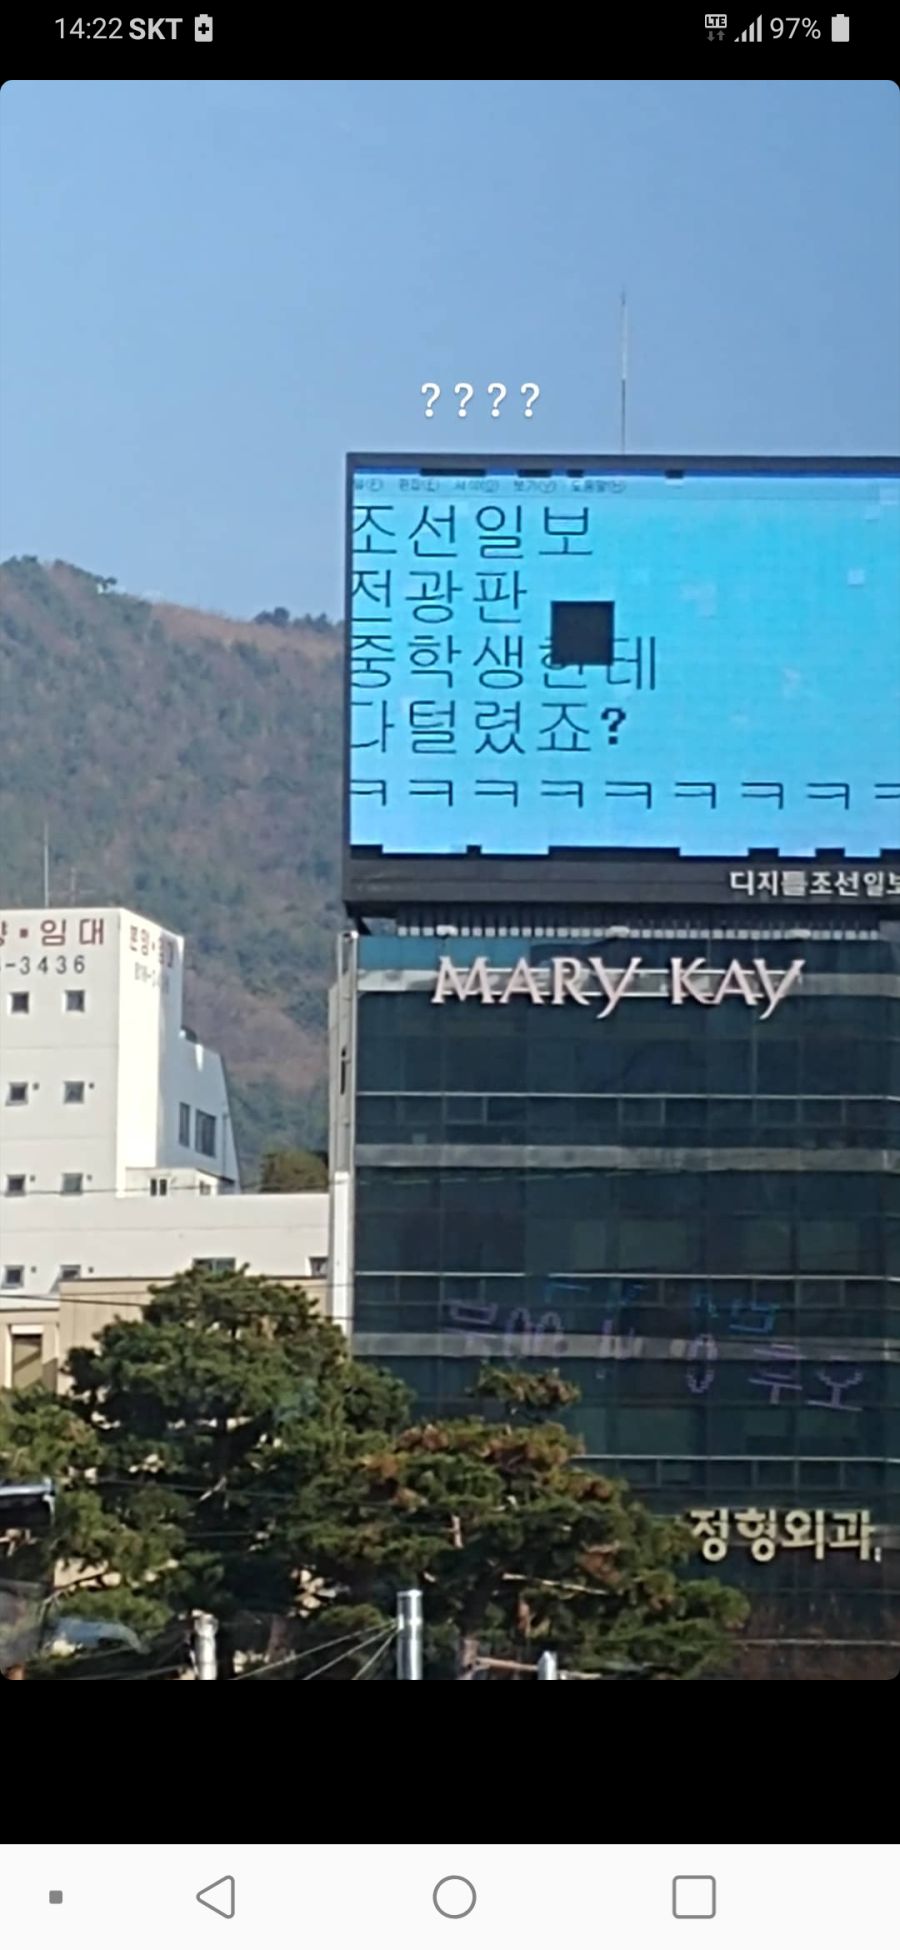 2019년 12월 부산 근황_조선일보 전광판 털림.png